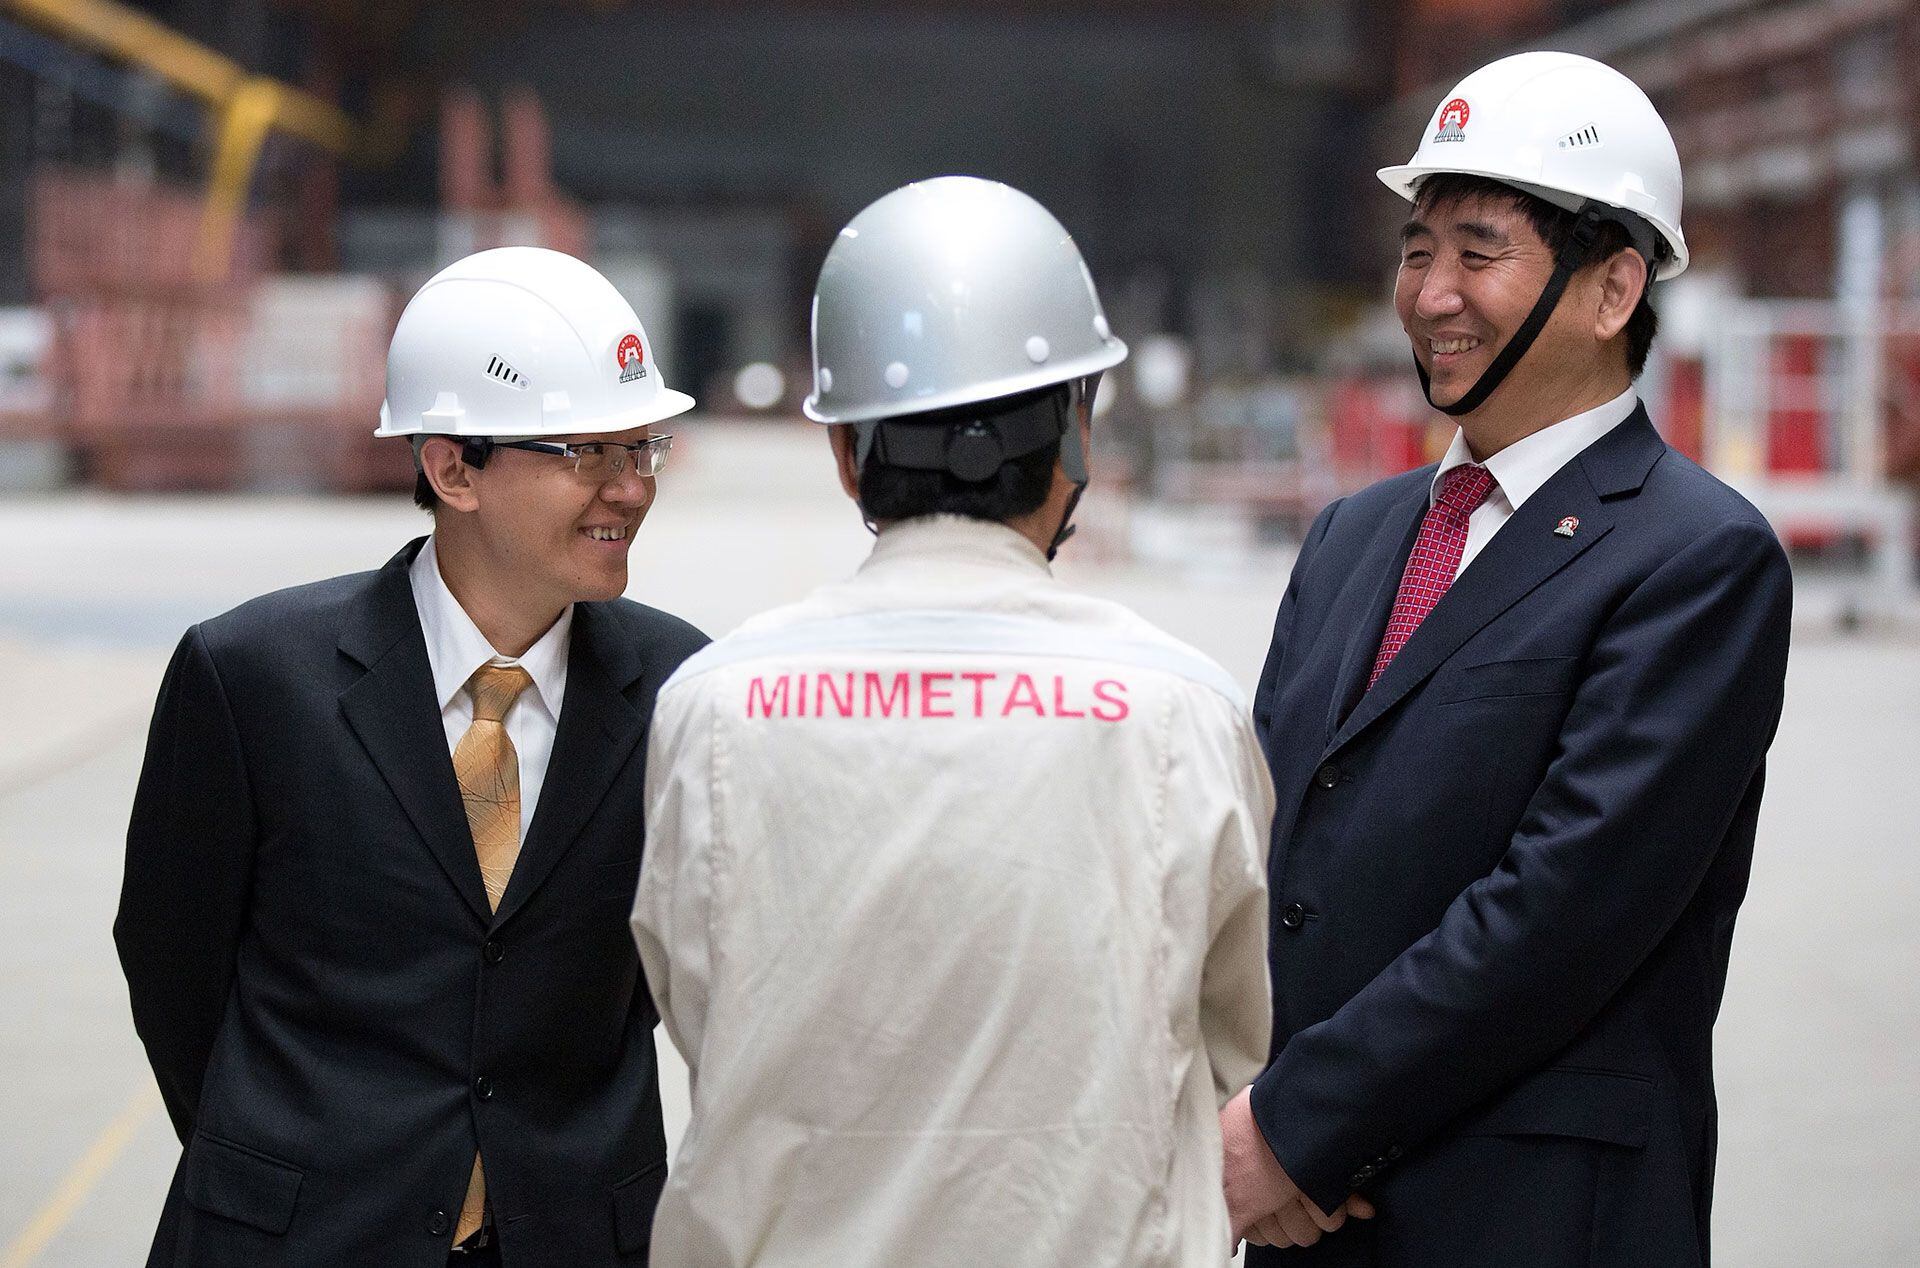 Empleados de China Minmetals asisten a la ceremonia de inauguración de una planta metalúrgica en Cheliábinsk, Rusia, en 2013. China Minmetals es una de las empresas chinas que buscan extraer metales raros del fondo marino (Andrey Rudakov/Bloomberg News/Getty Images).